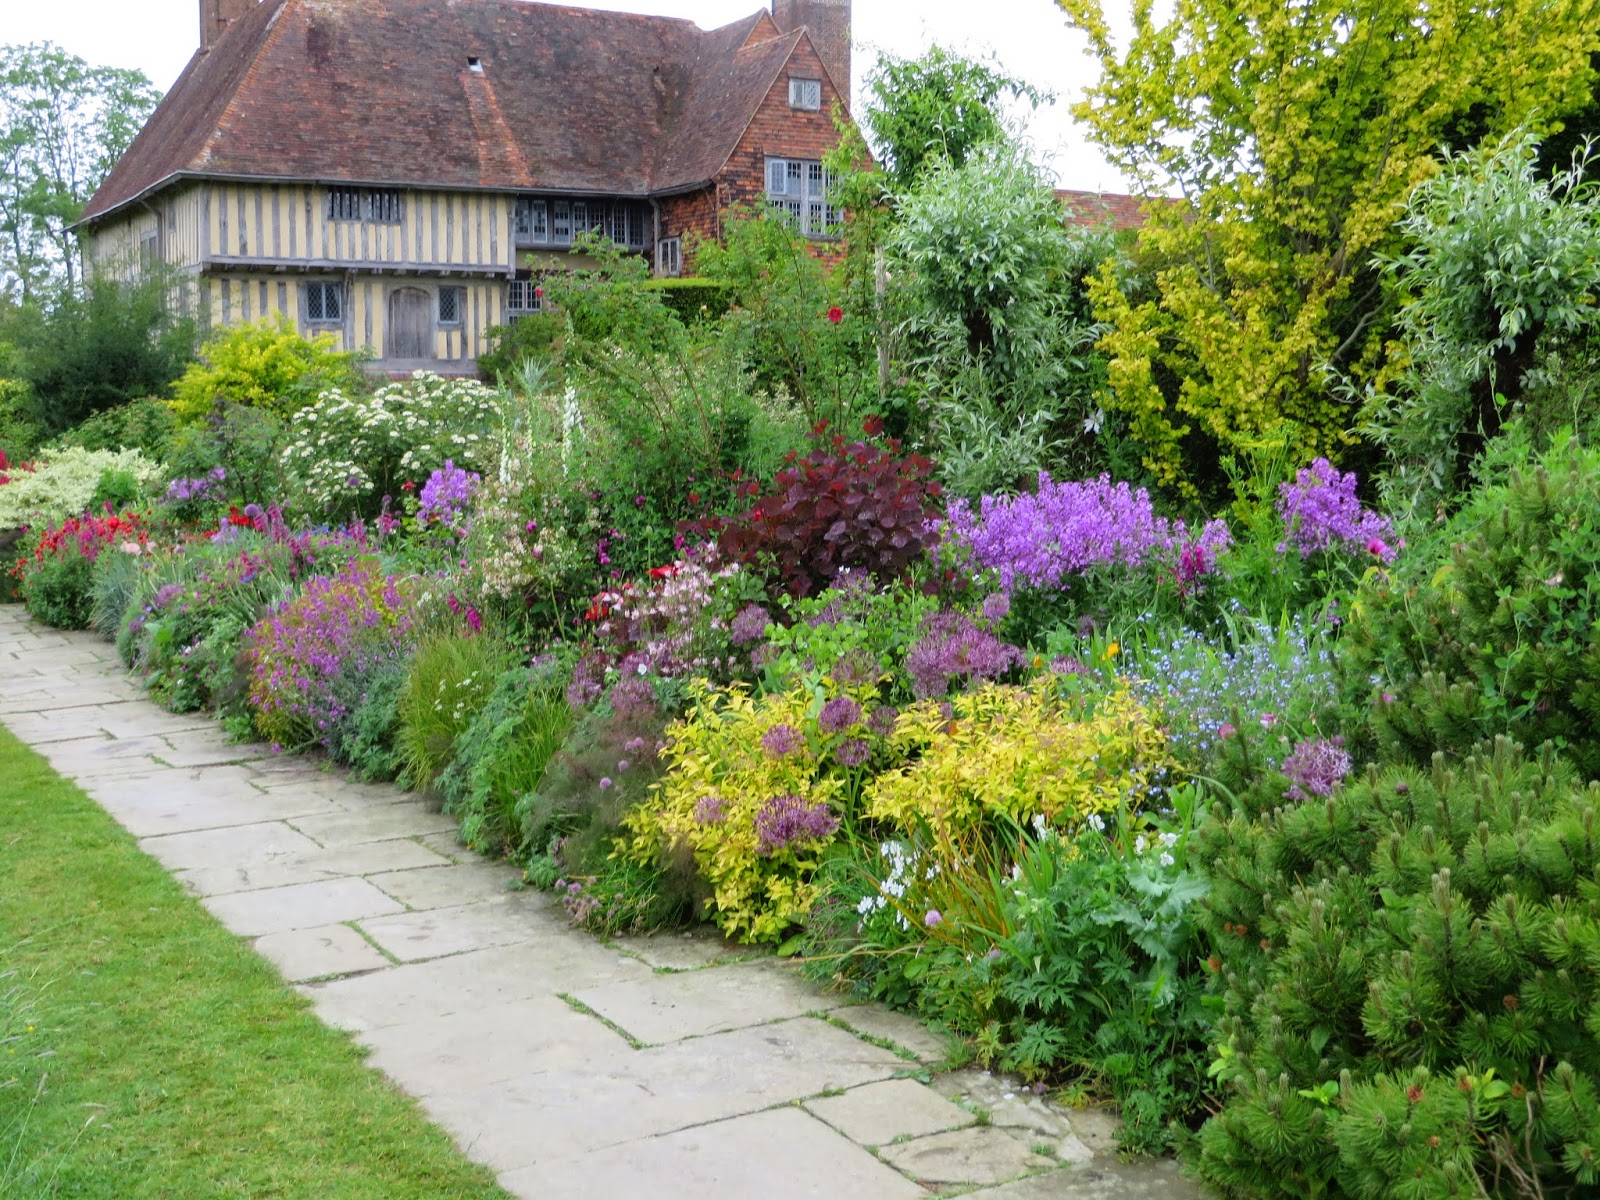 An English Garden